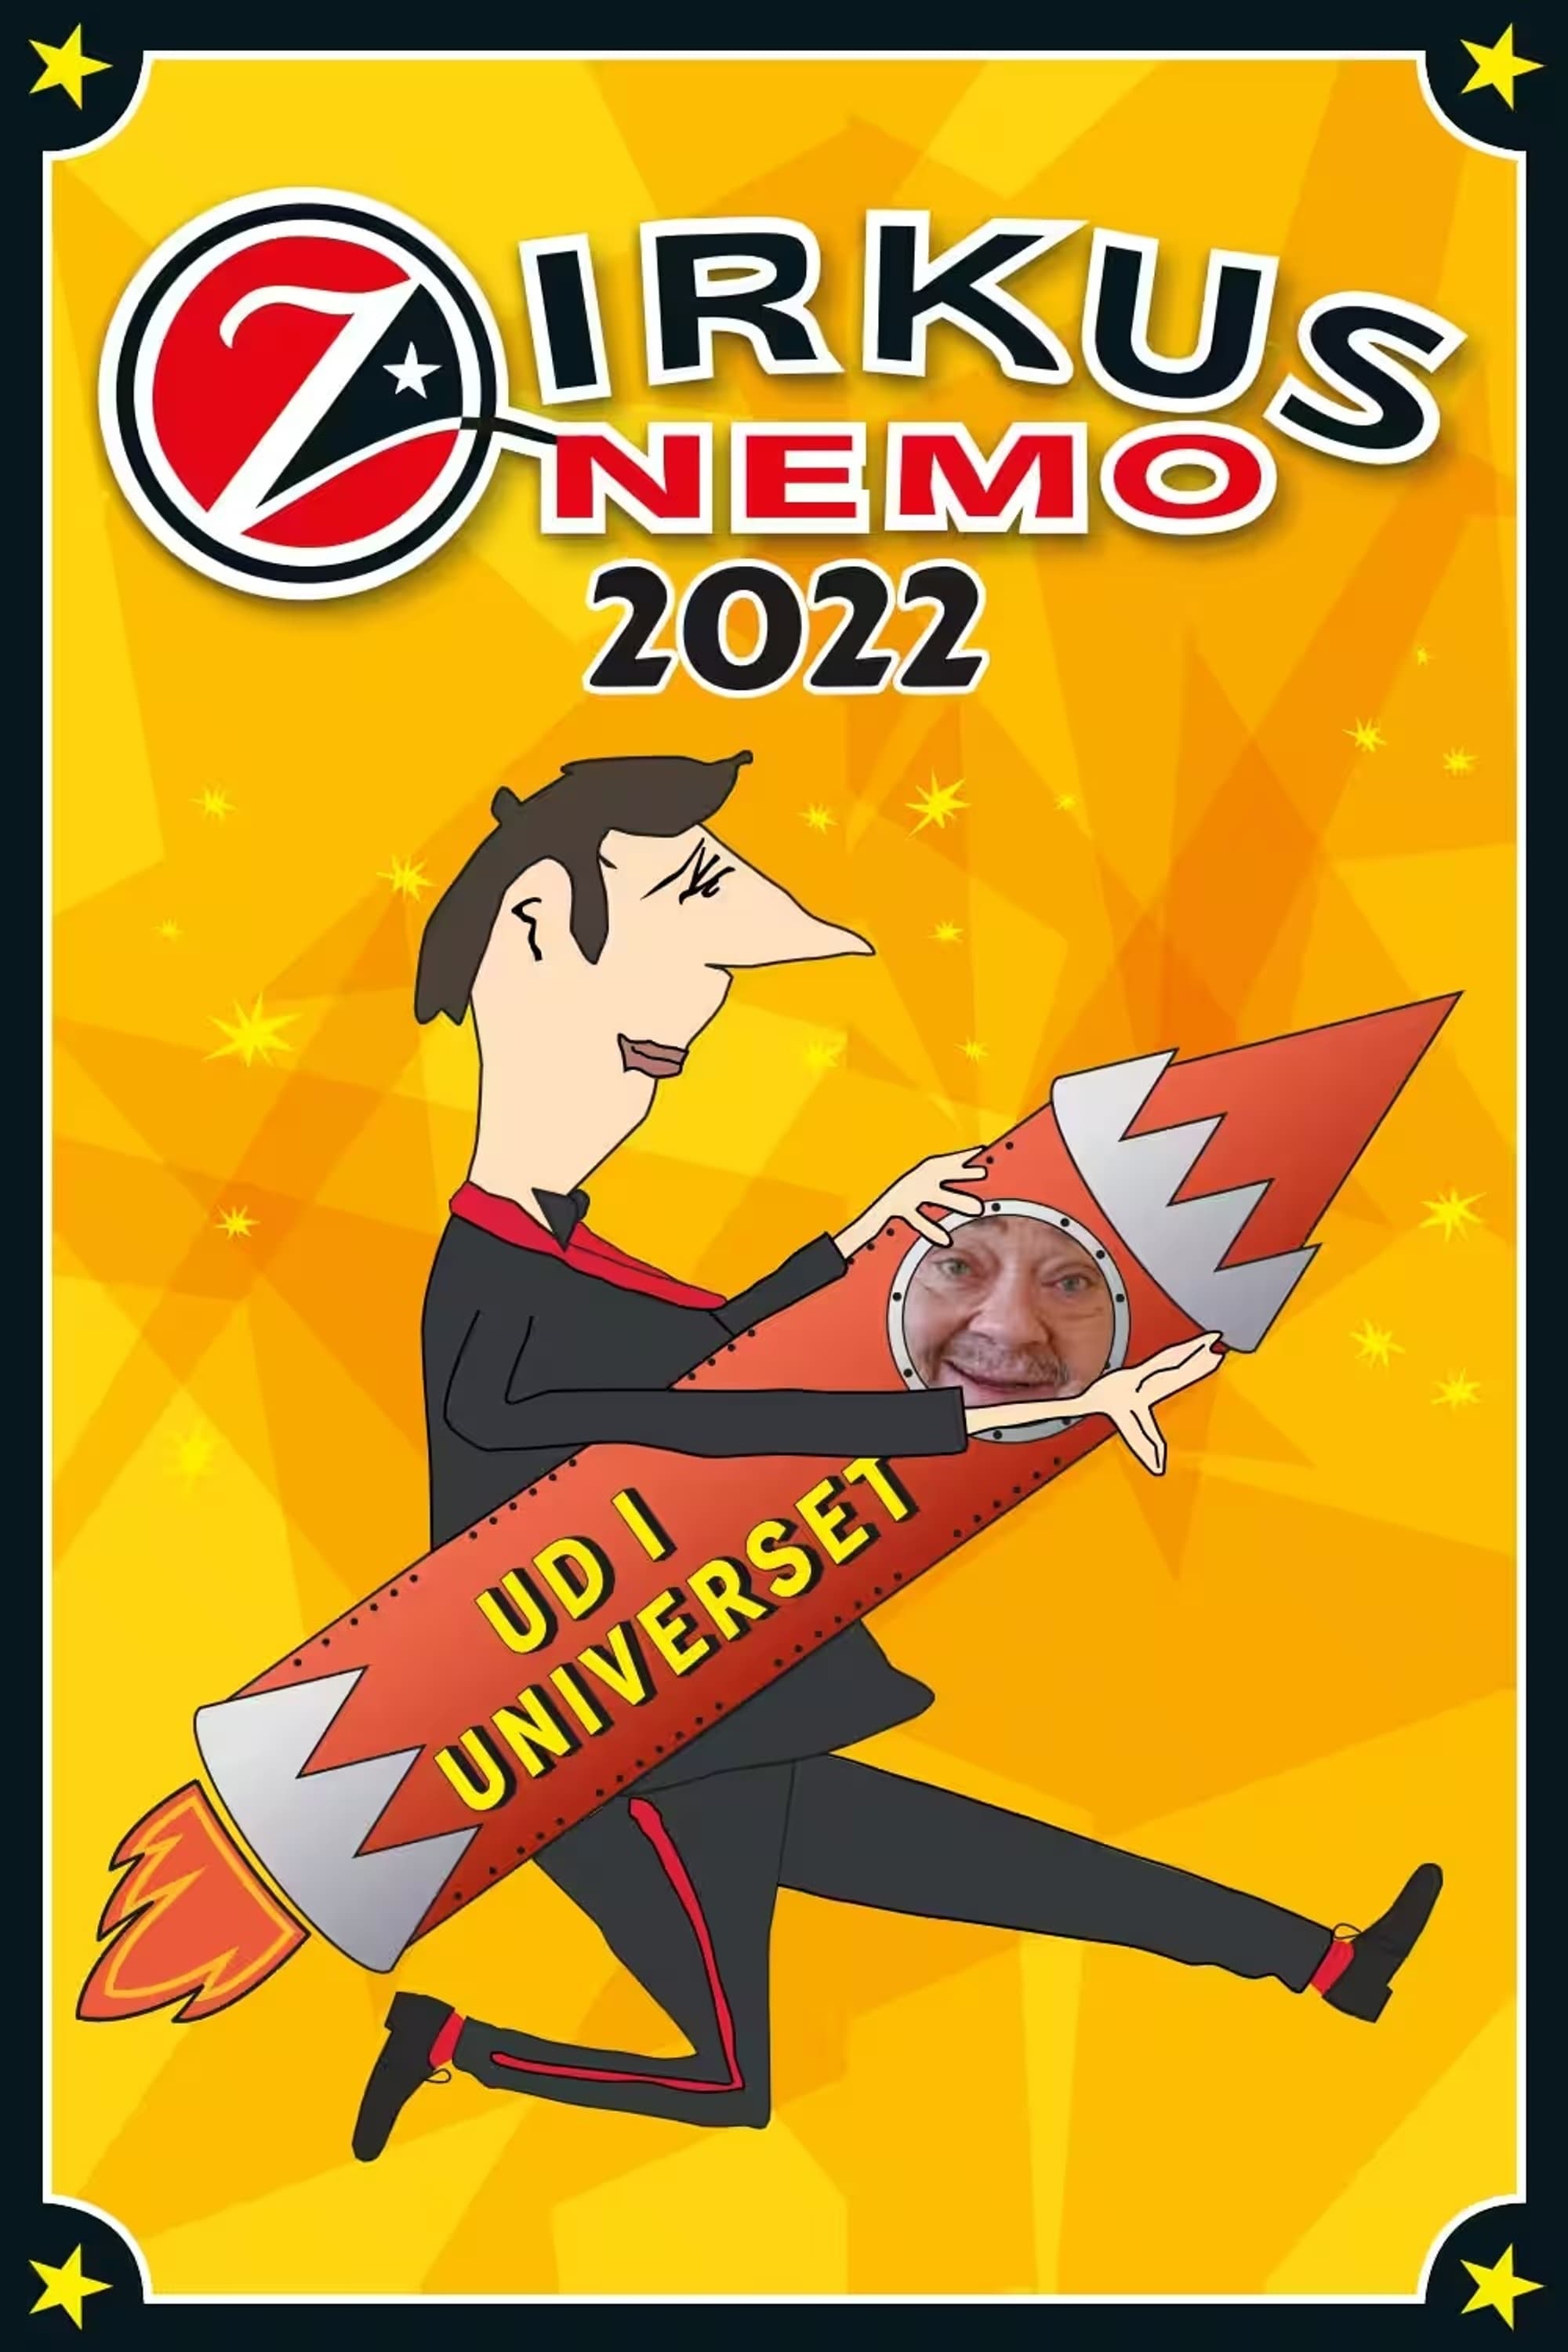 Zirkus Nemo 2022 - Ud i universet